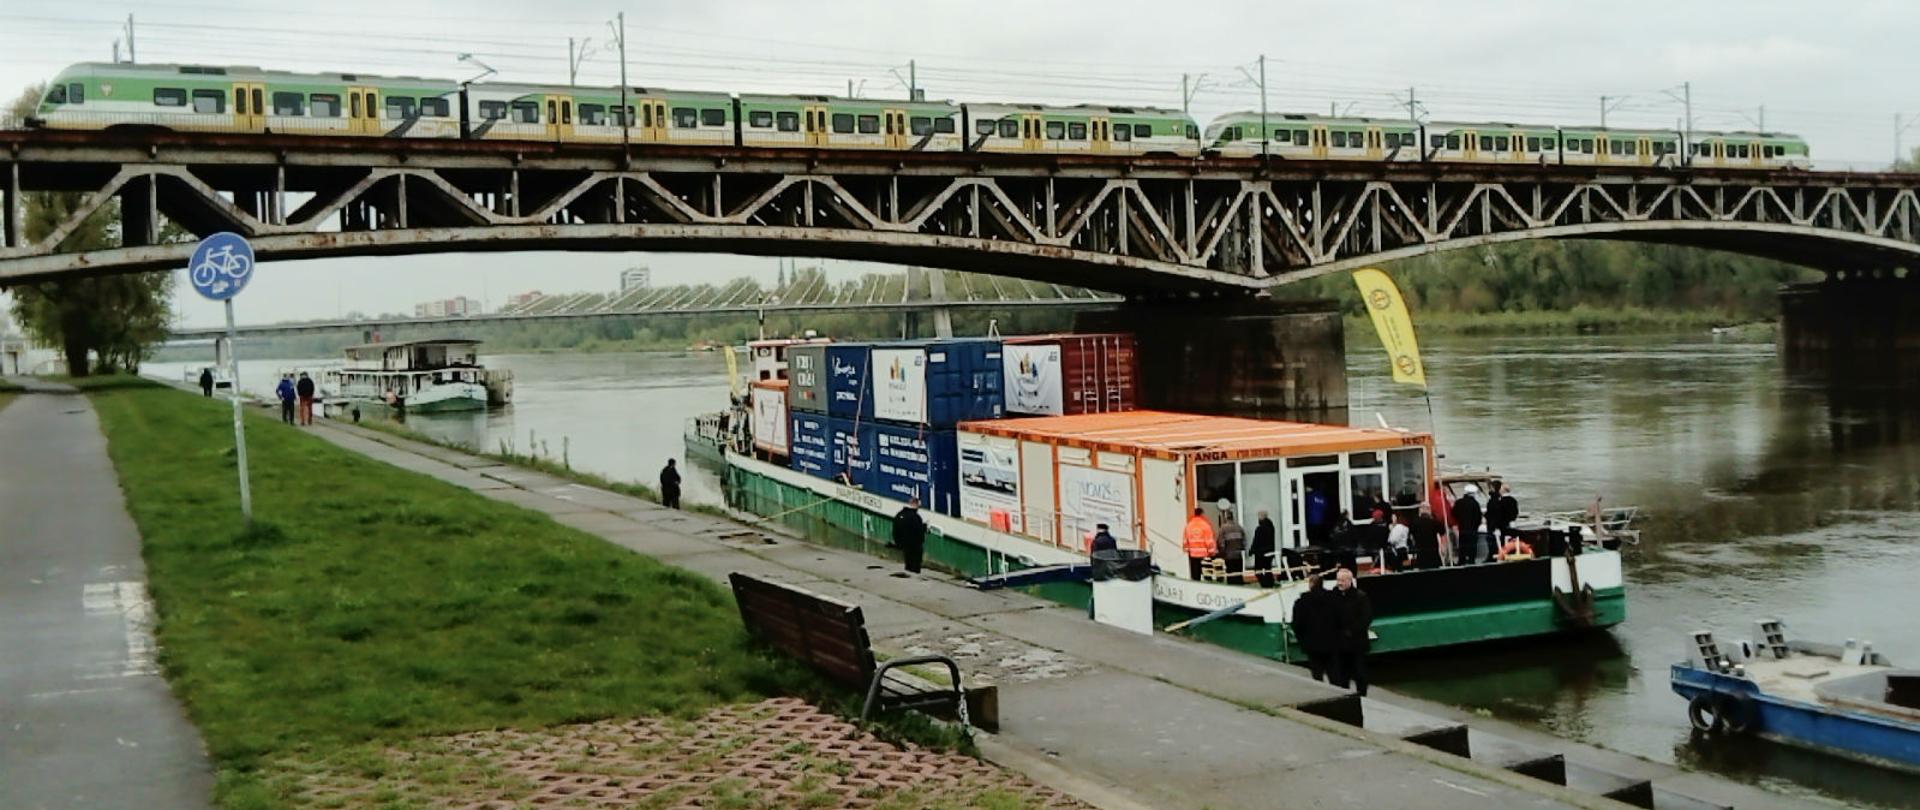 Na zdjęciu pokazana jest barka z kontenerami, która jest zacumowana przy brzegu Wisły w Warszawie